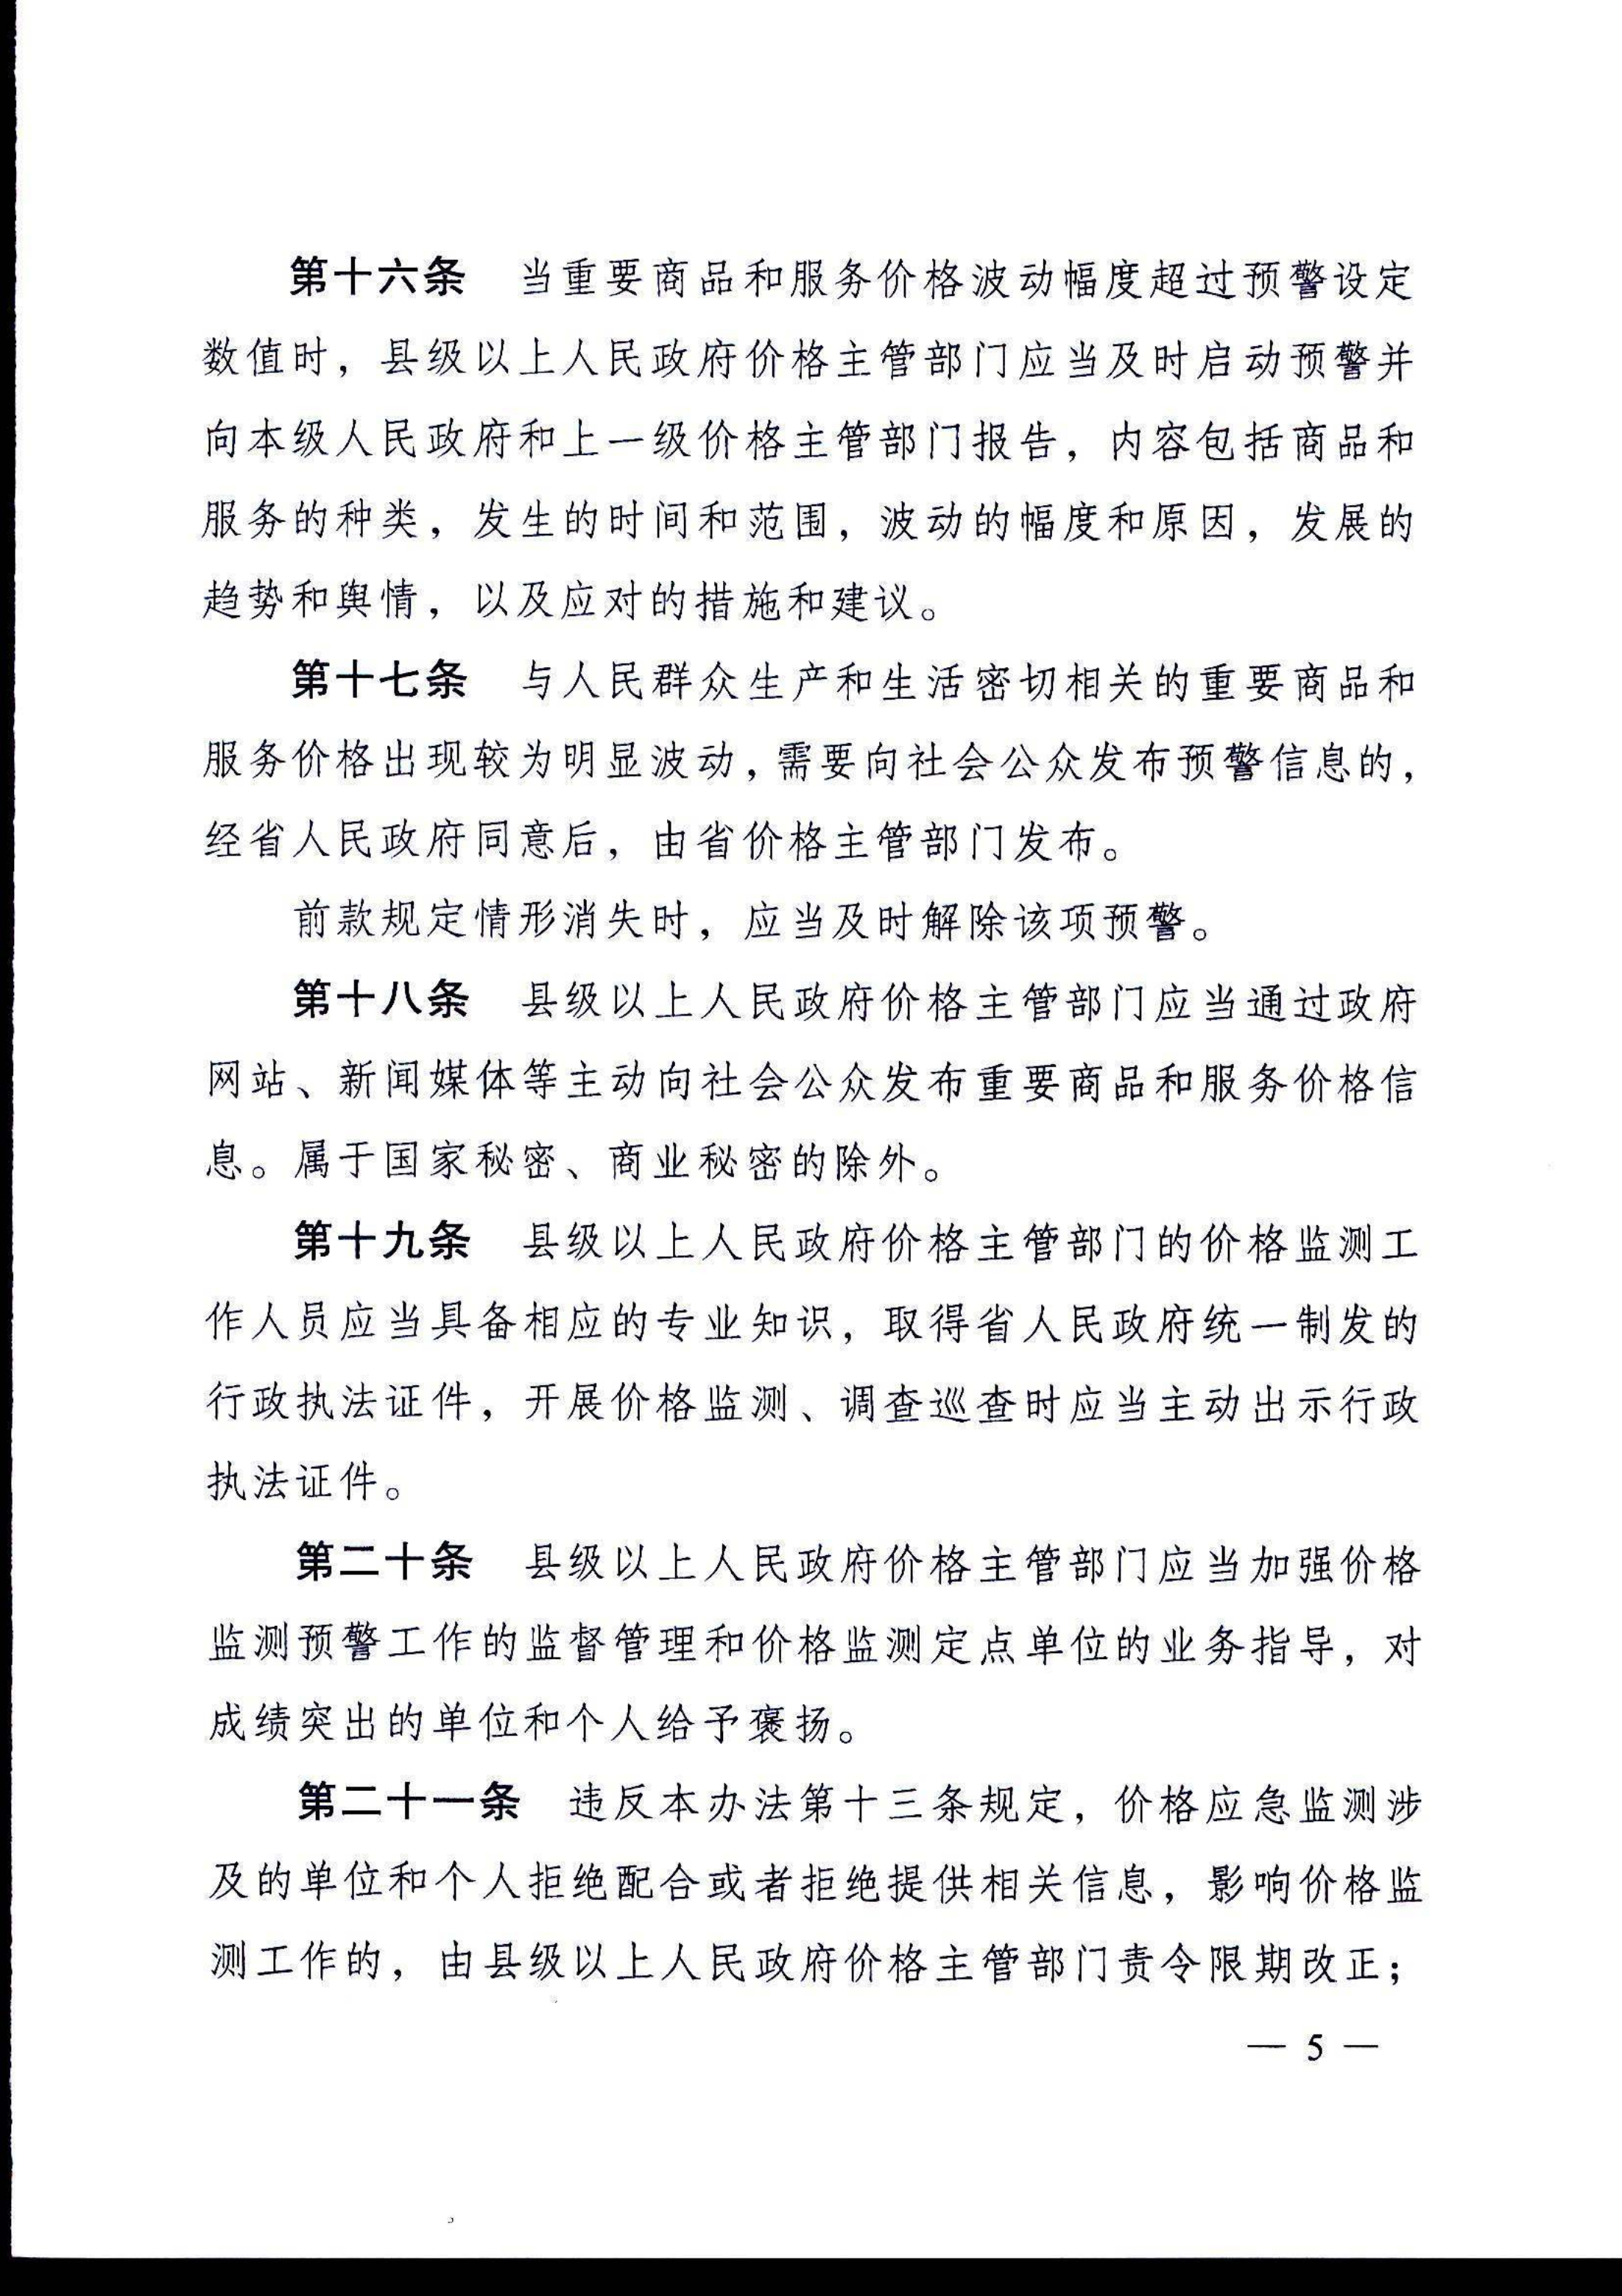 安徽省价格监测预警管理办法(1)(1)_6.png